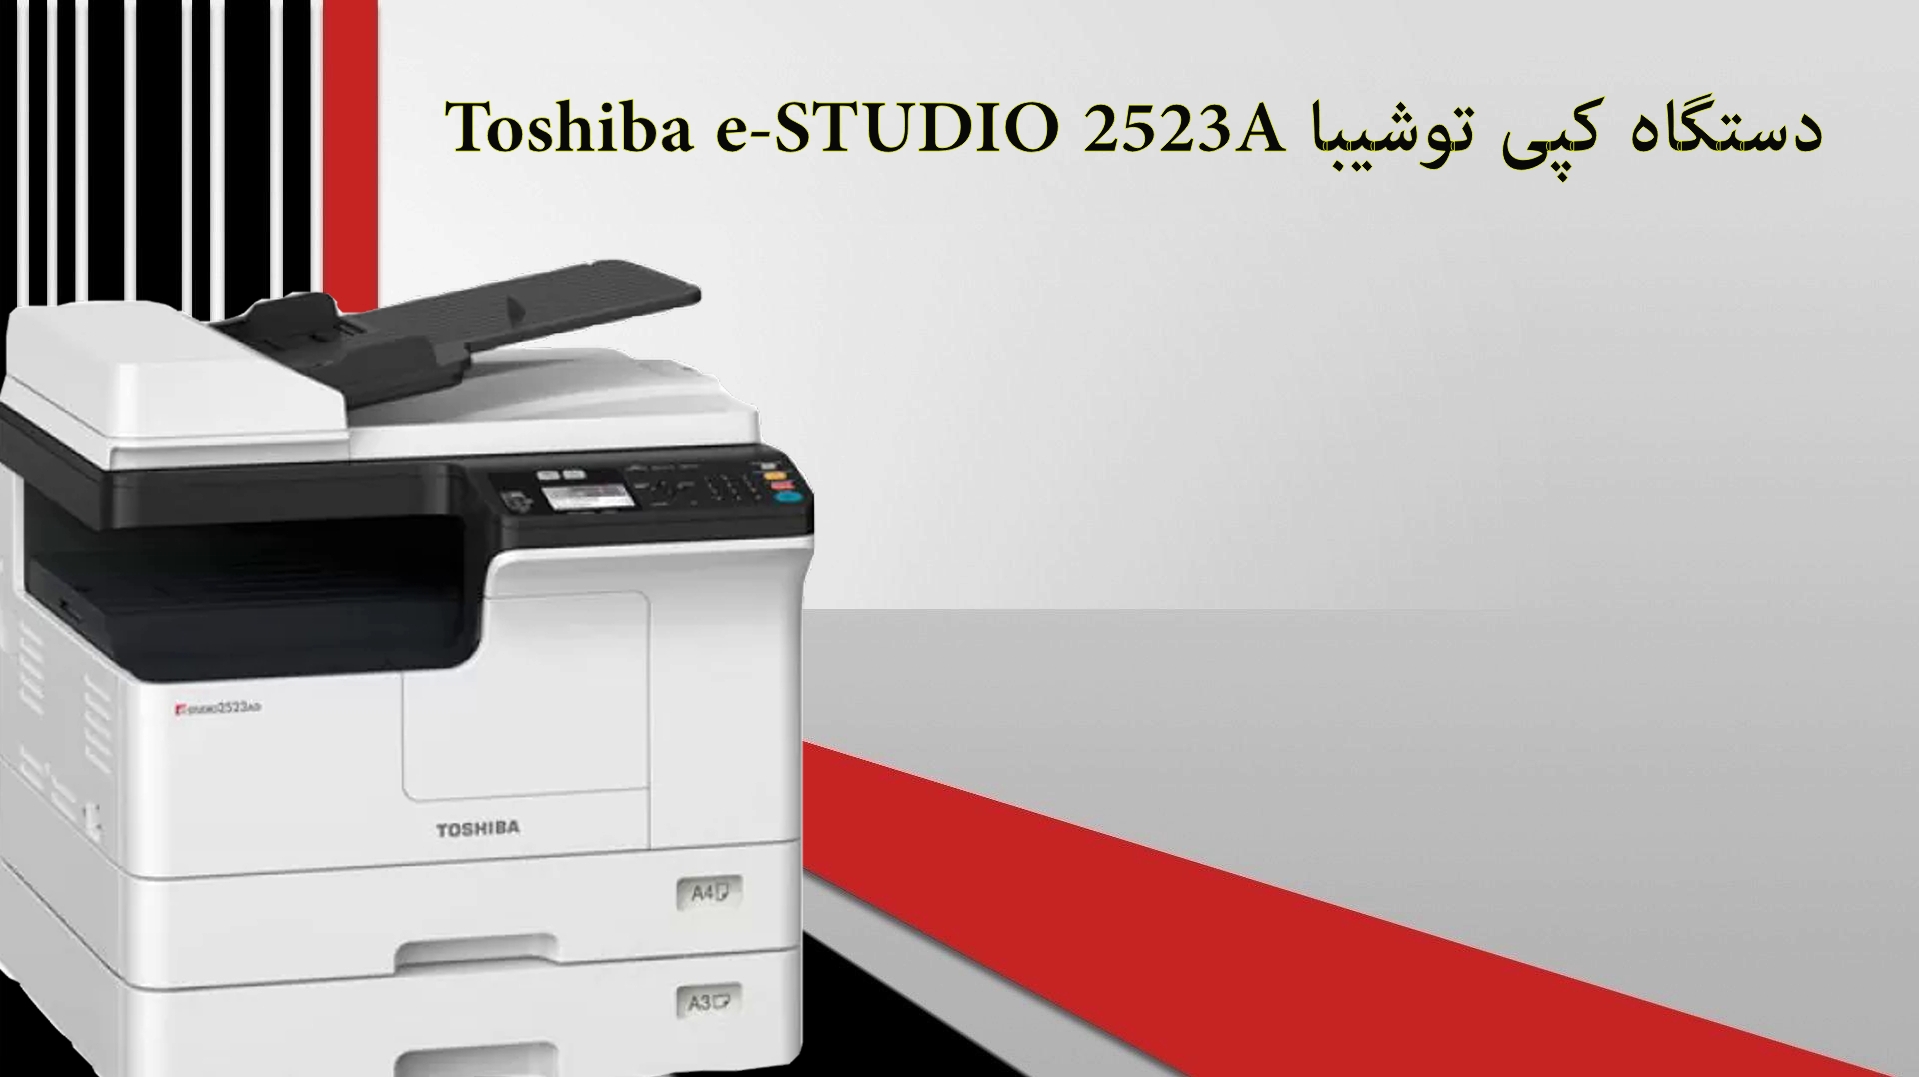 دستگاه کپی توشیبا Toshiba e-STUDIO 2303A